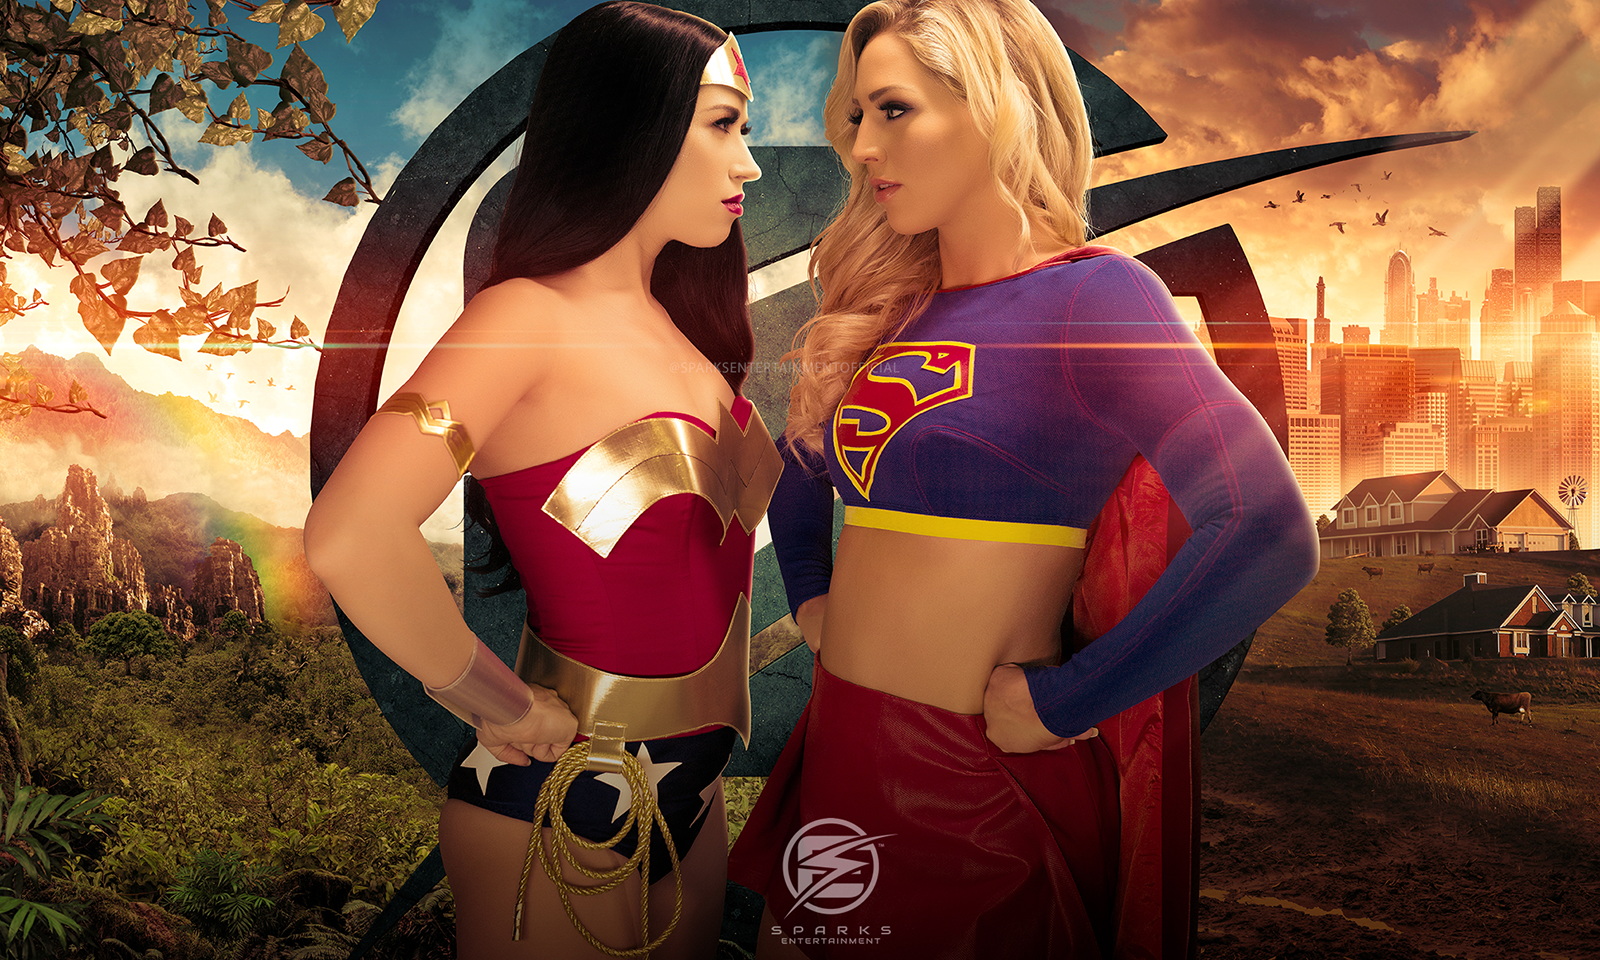 Sparks Entertainment Releases 'Supergirl vs. Wonder Woman' Scene